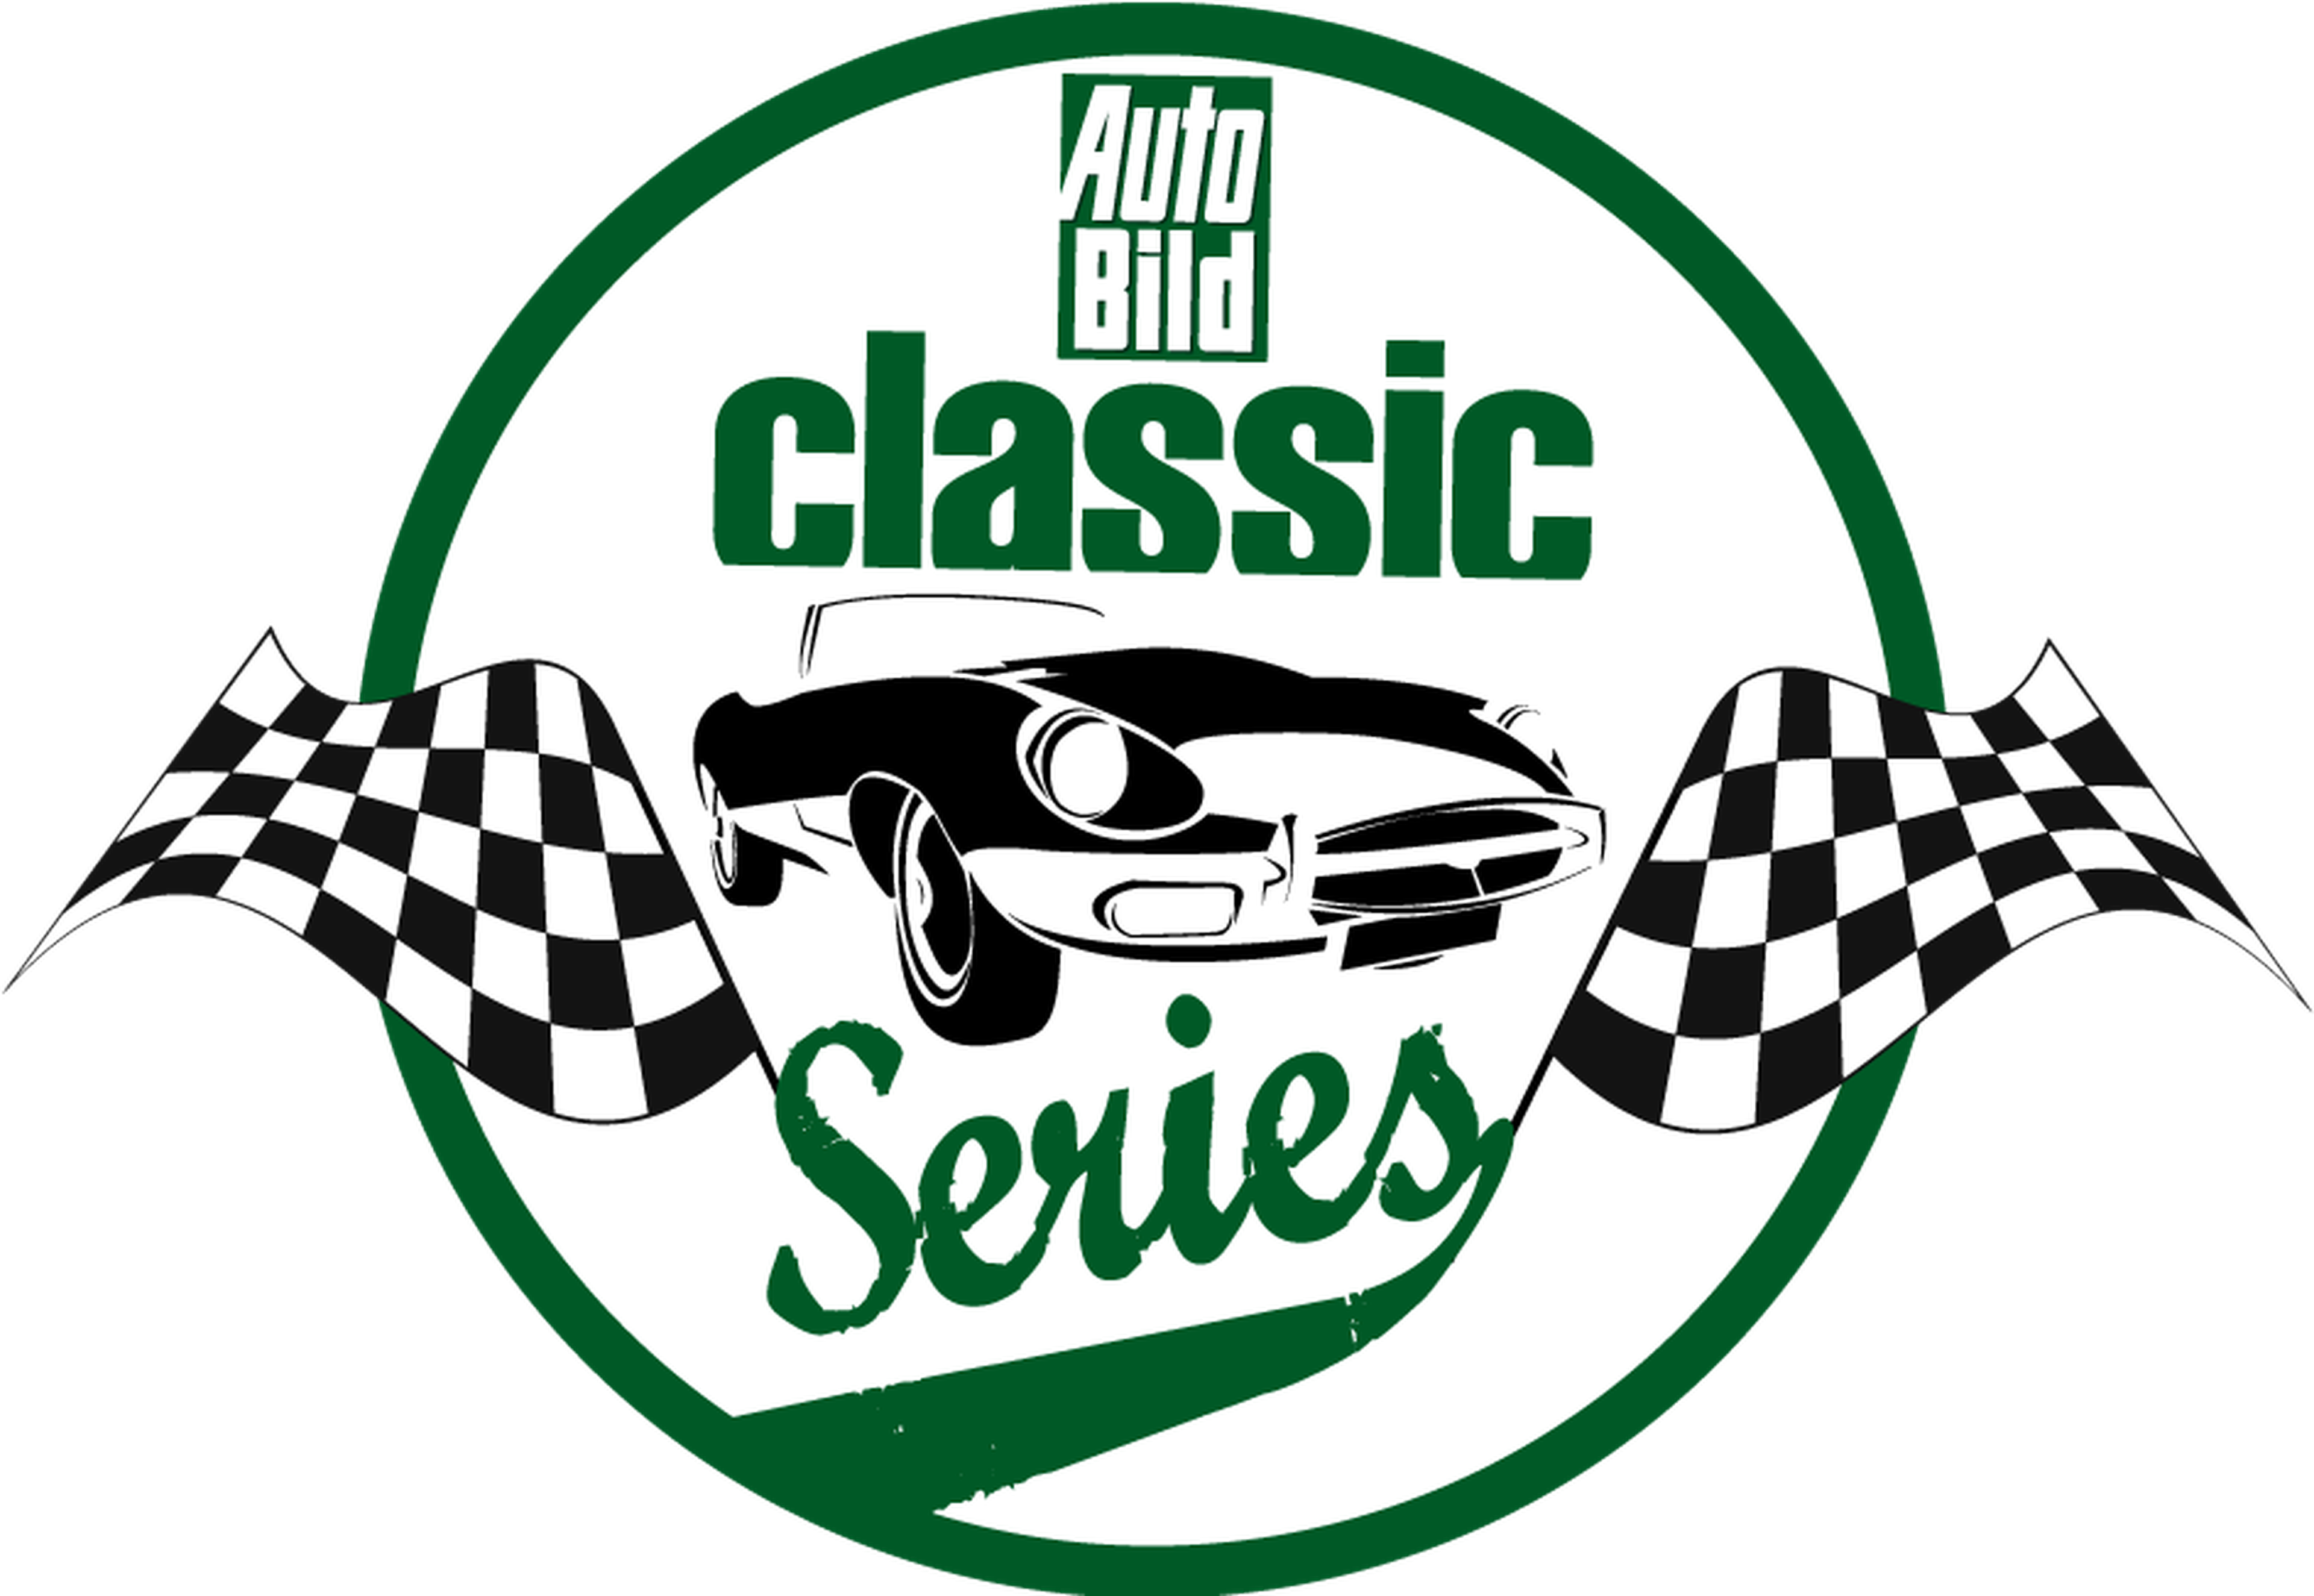 Auto Bild Classic Series: listado definitivo participantes